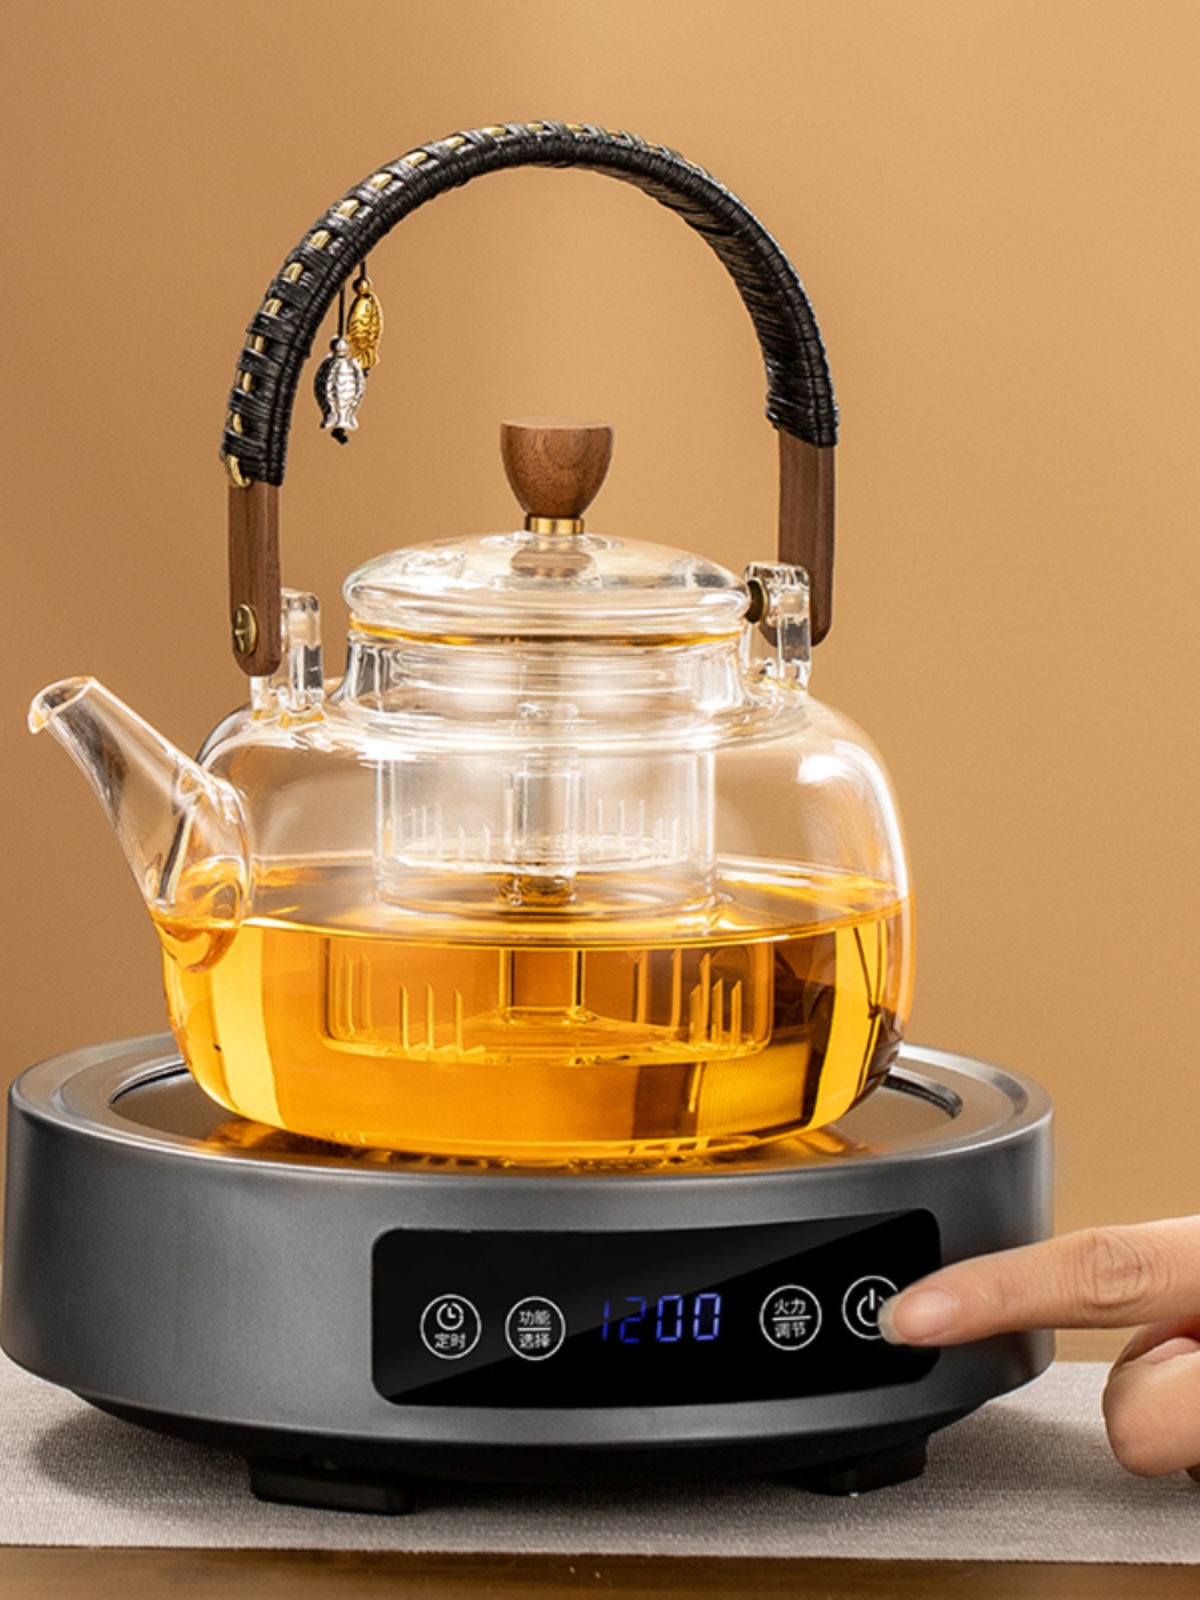 戈米蒸煮茶壶电陶炉玻璃烧水壶家用茶具全自动小型围炉煮茶器套装